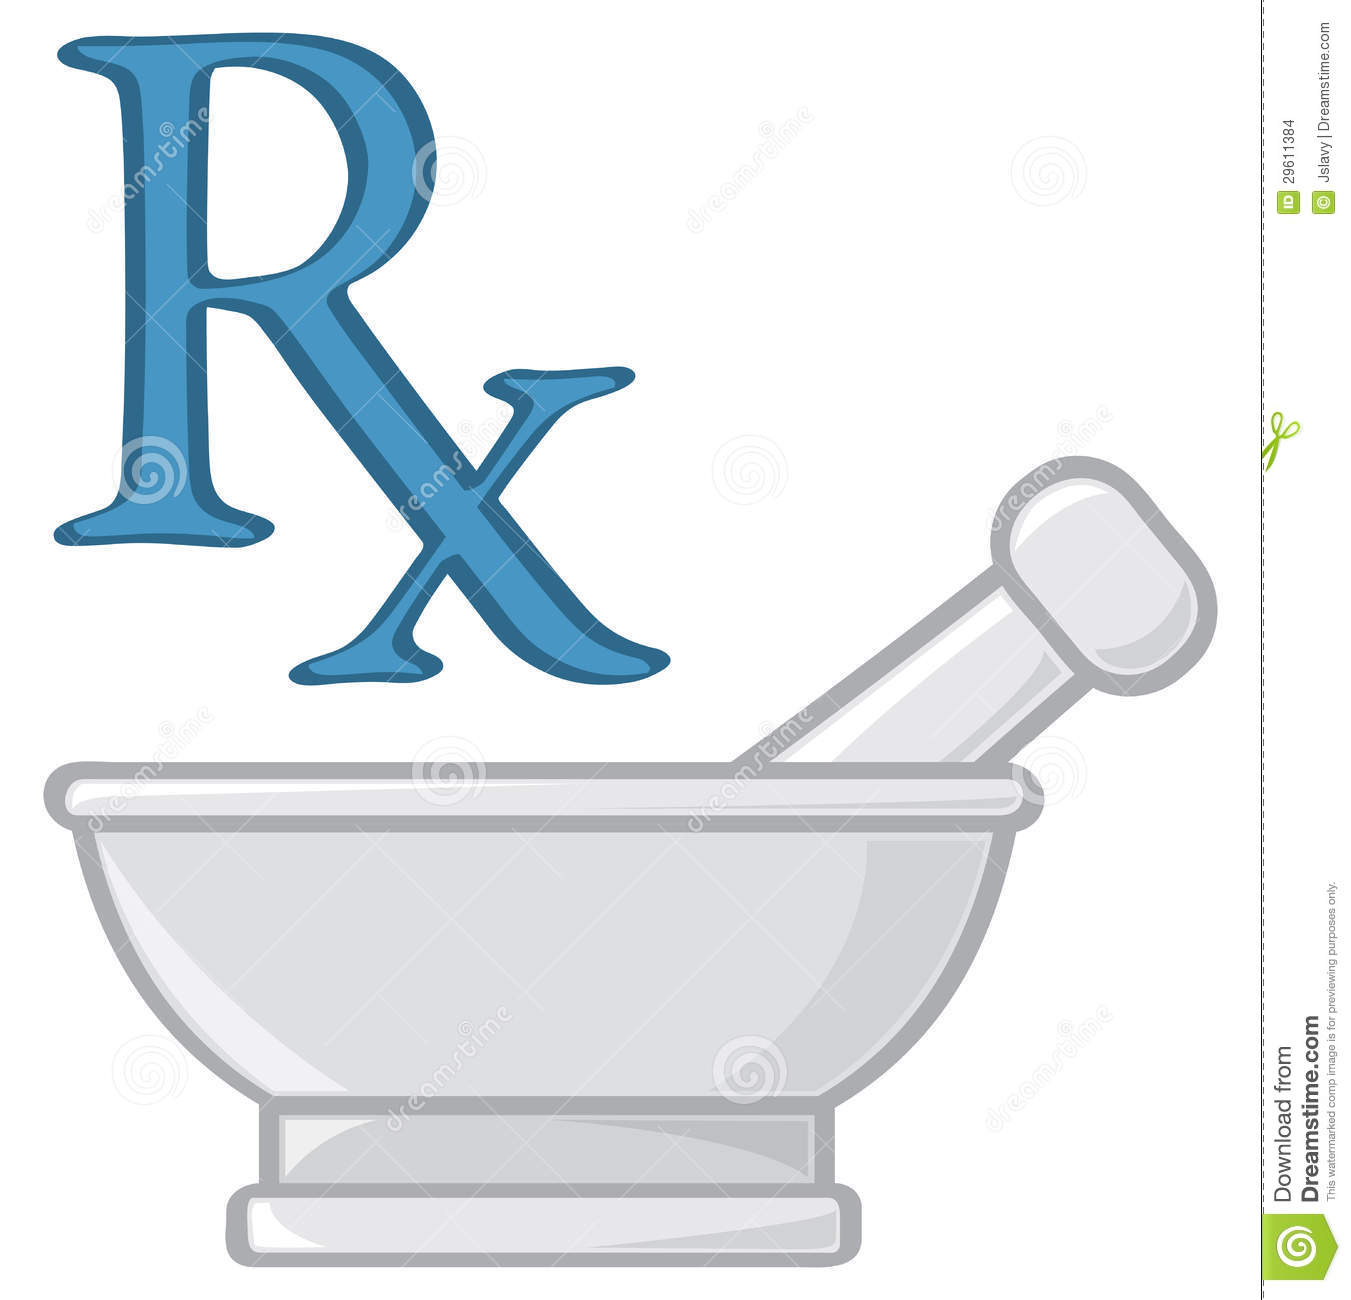 Pharmacy Symbols Stock Images   Image  29611384